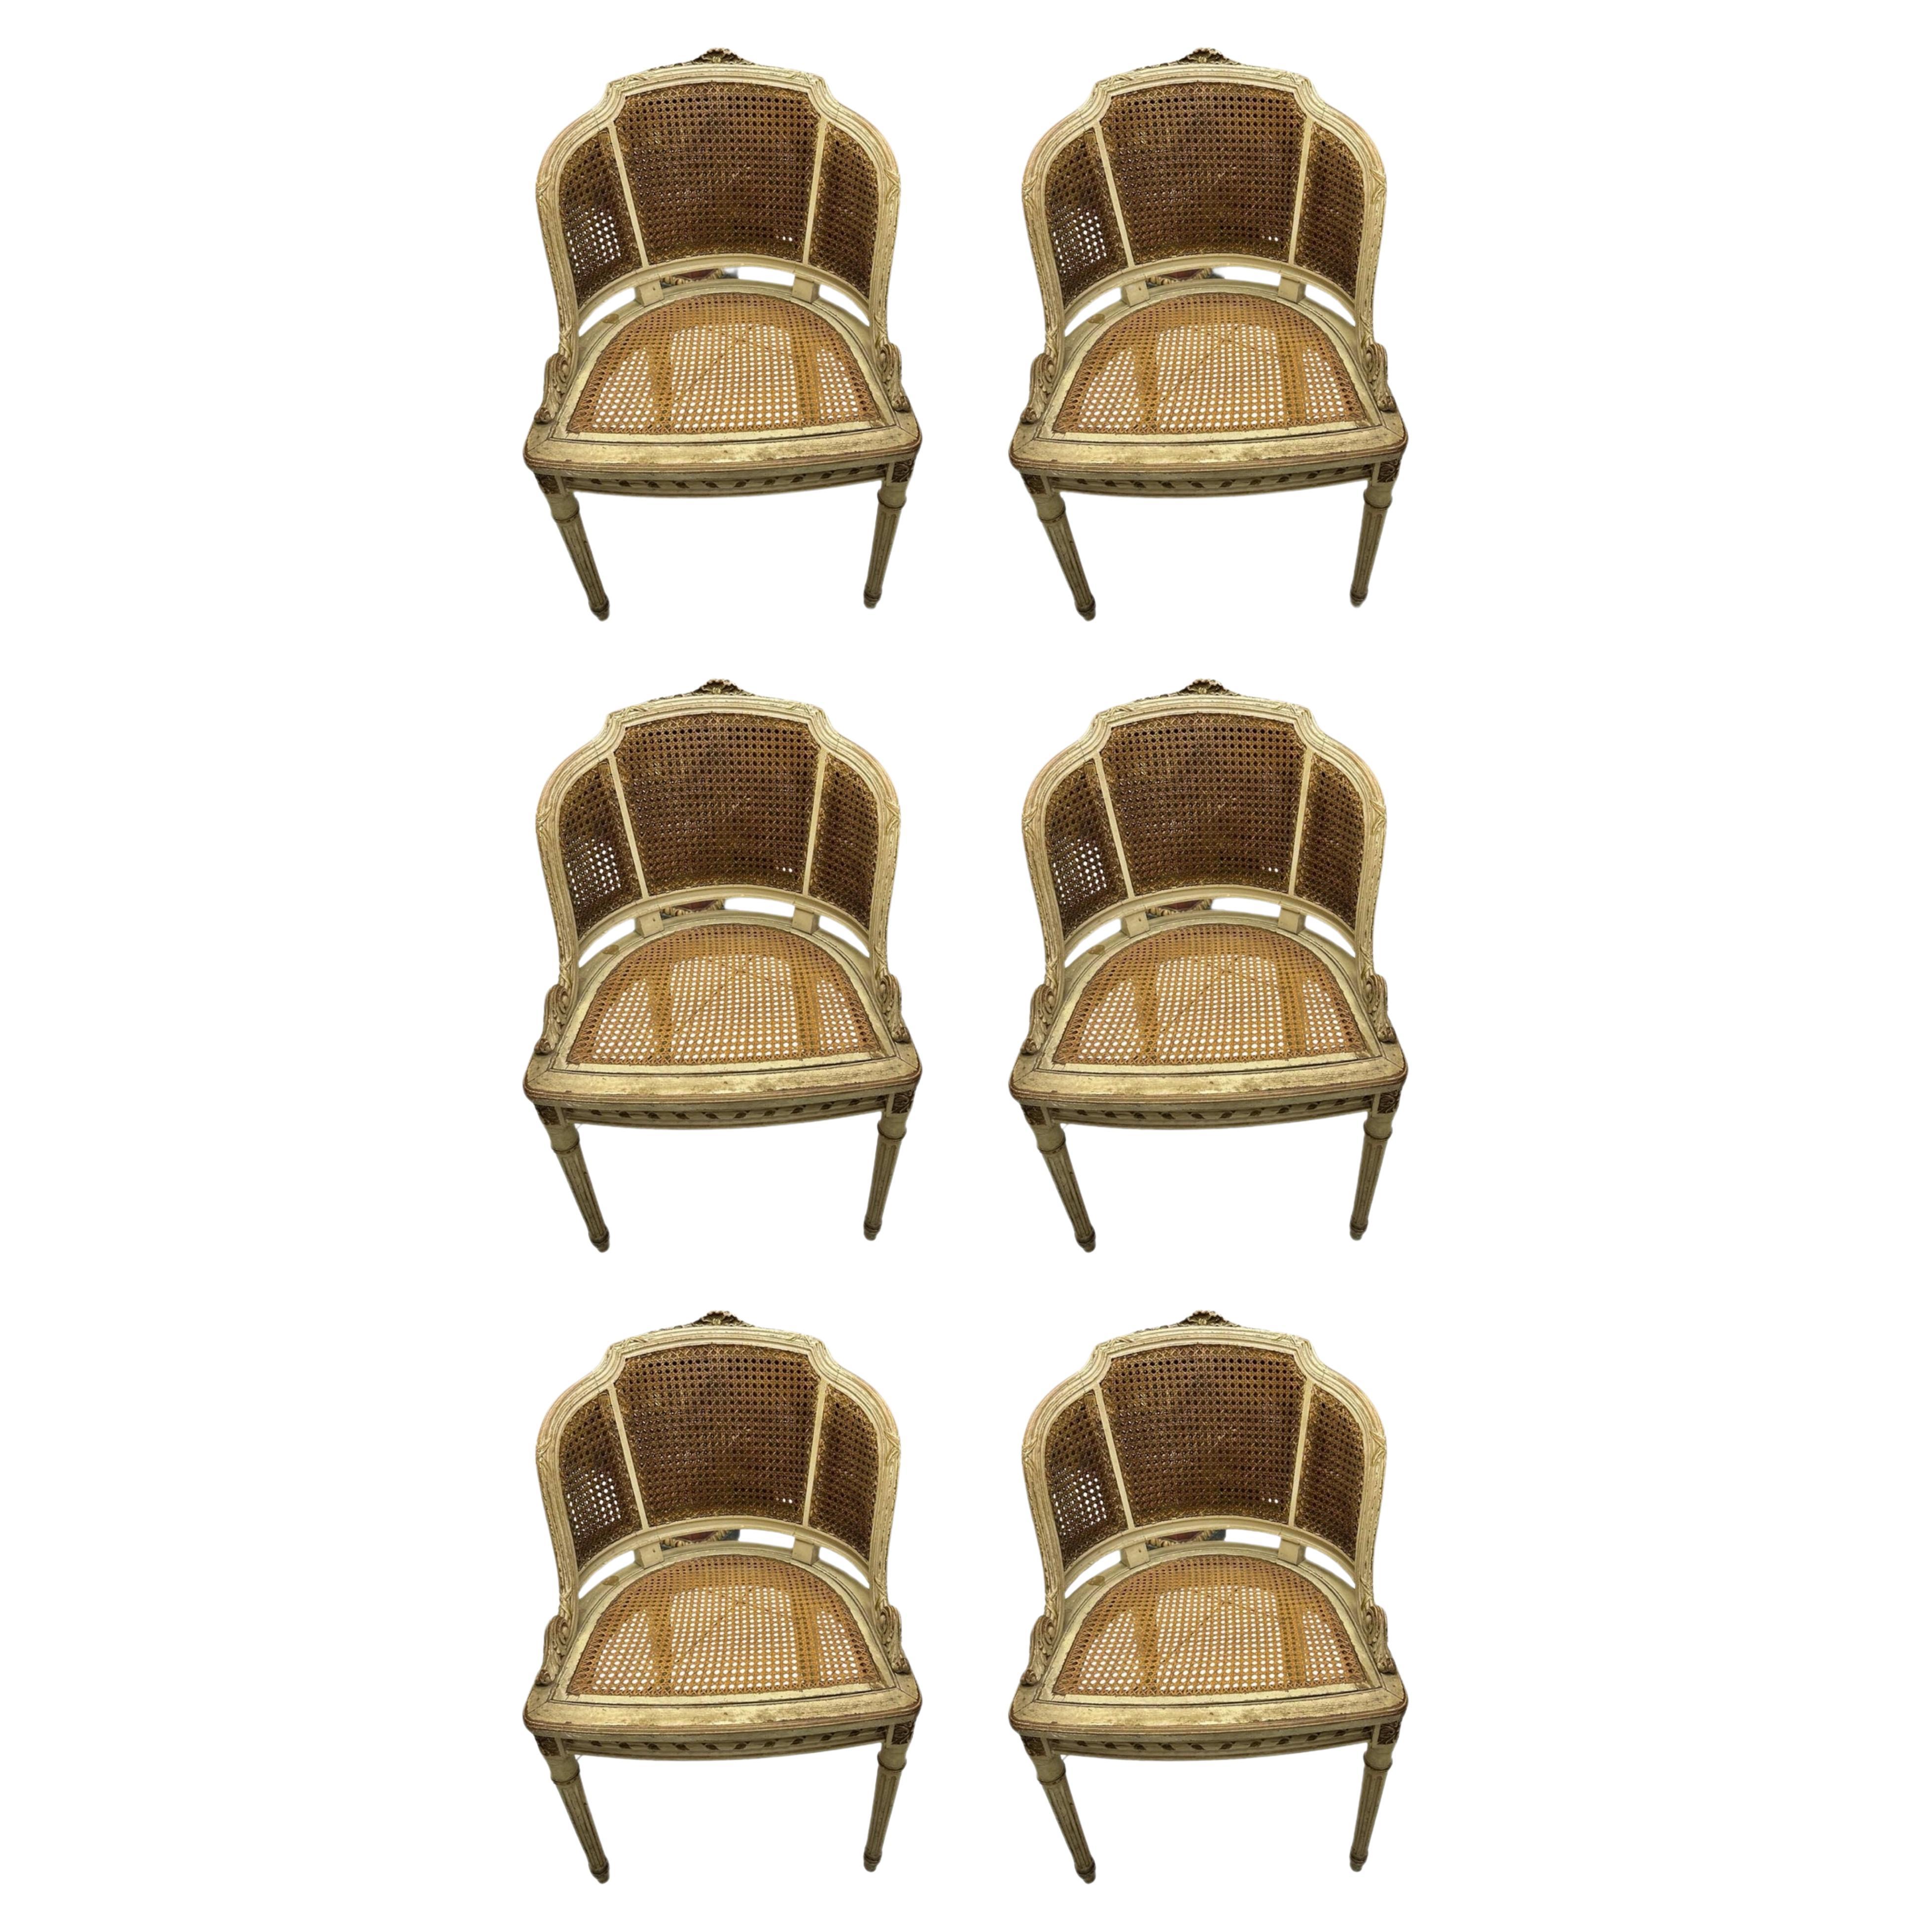 Schöne und einzigartige 6 (sechs) italienische Sessel des 19. Jahrhunderts